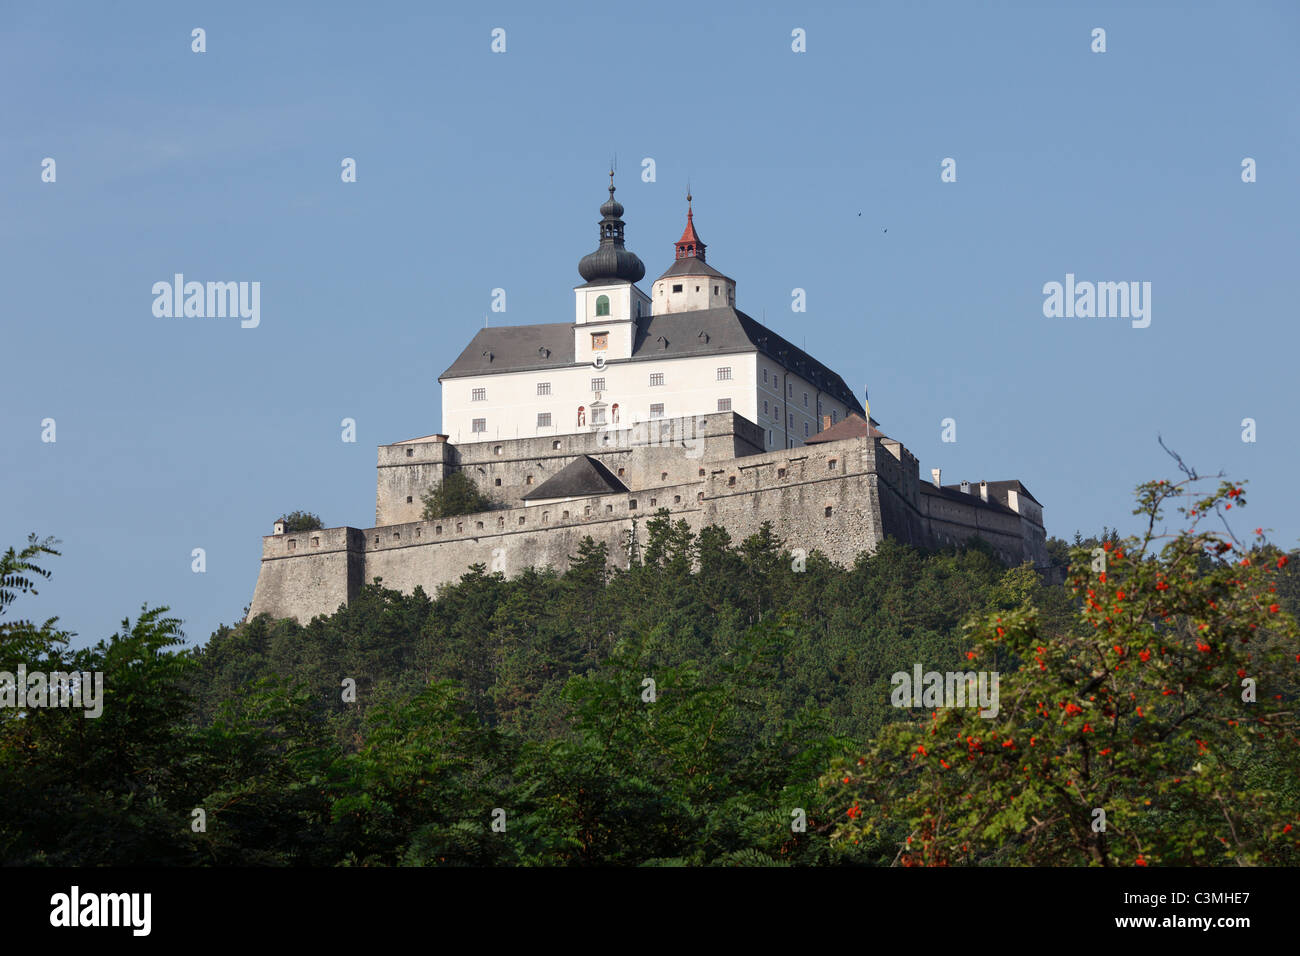 Austria, Burgenland, View of forchtenstein castle Stock Photo